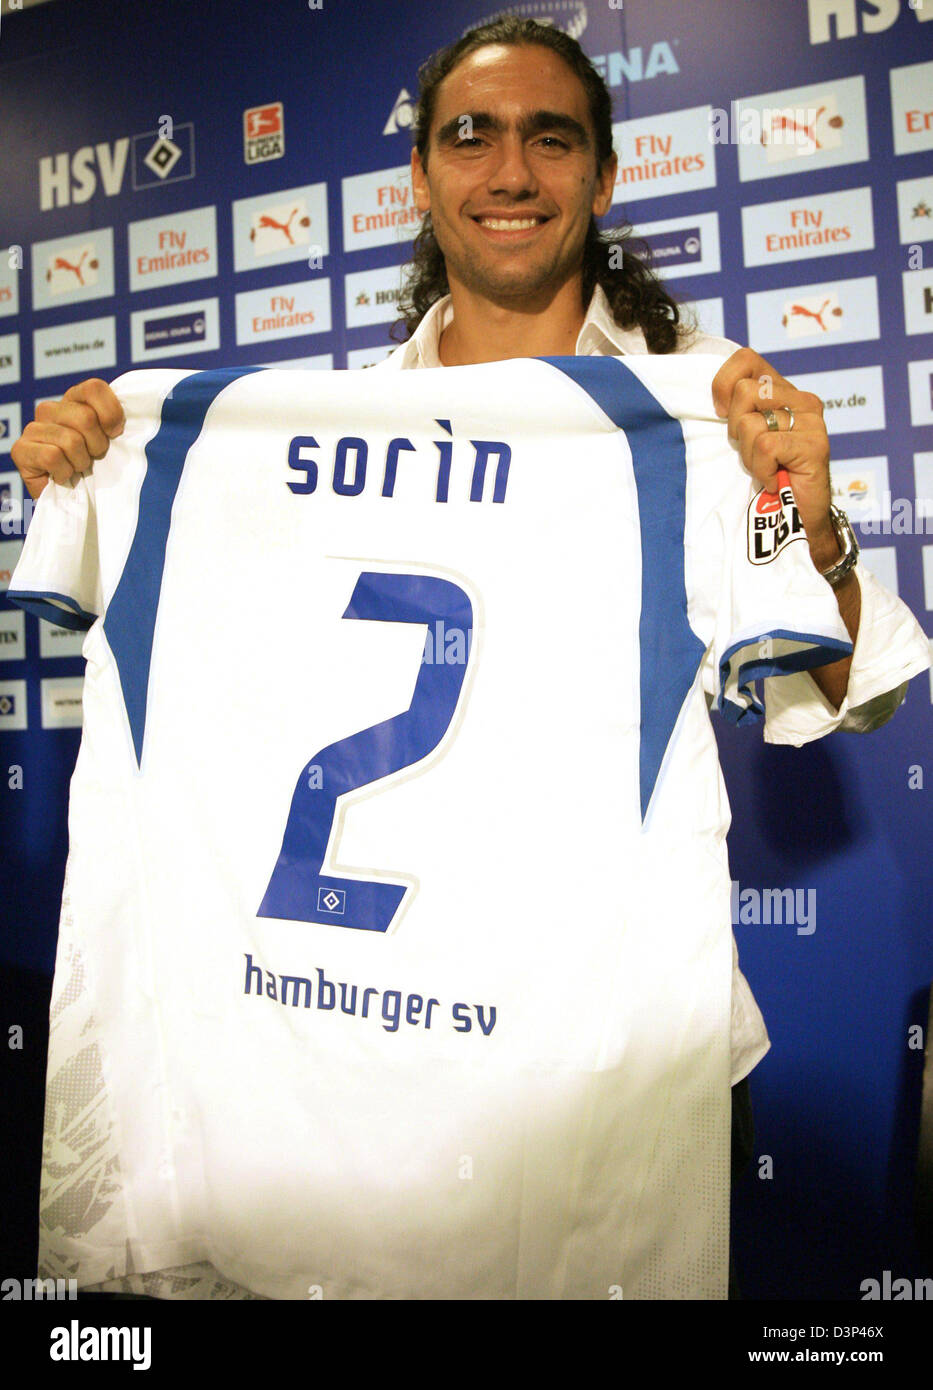 Argentinien-Kapitän Juan Pablo Sorin präsentiert eine Hamburger SV (HSV)- Trikot mit seinem Namen auf der Rückseite während einer Pressekonferenz in  Hamburg, Deutschland, Mittwoch, 30. August 2006. Der Bundesliga-Verein  unterzeichnet die 30 Jahre alte